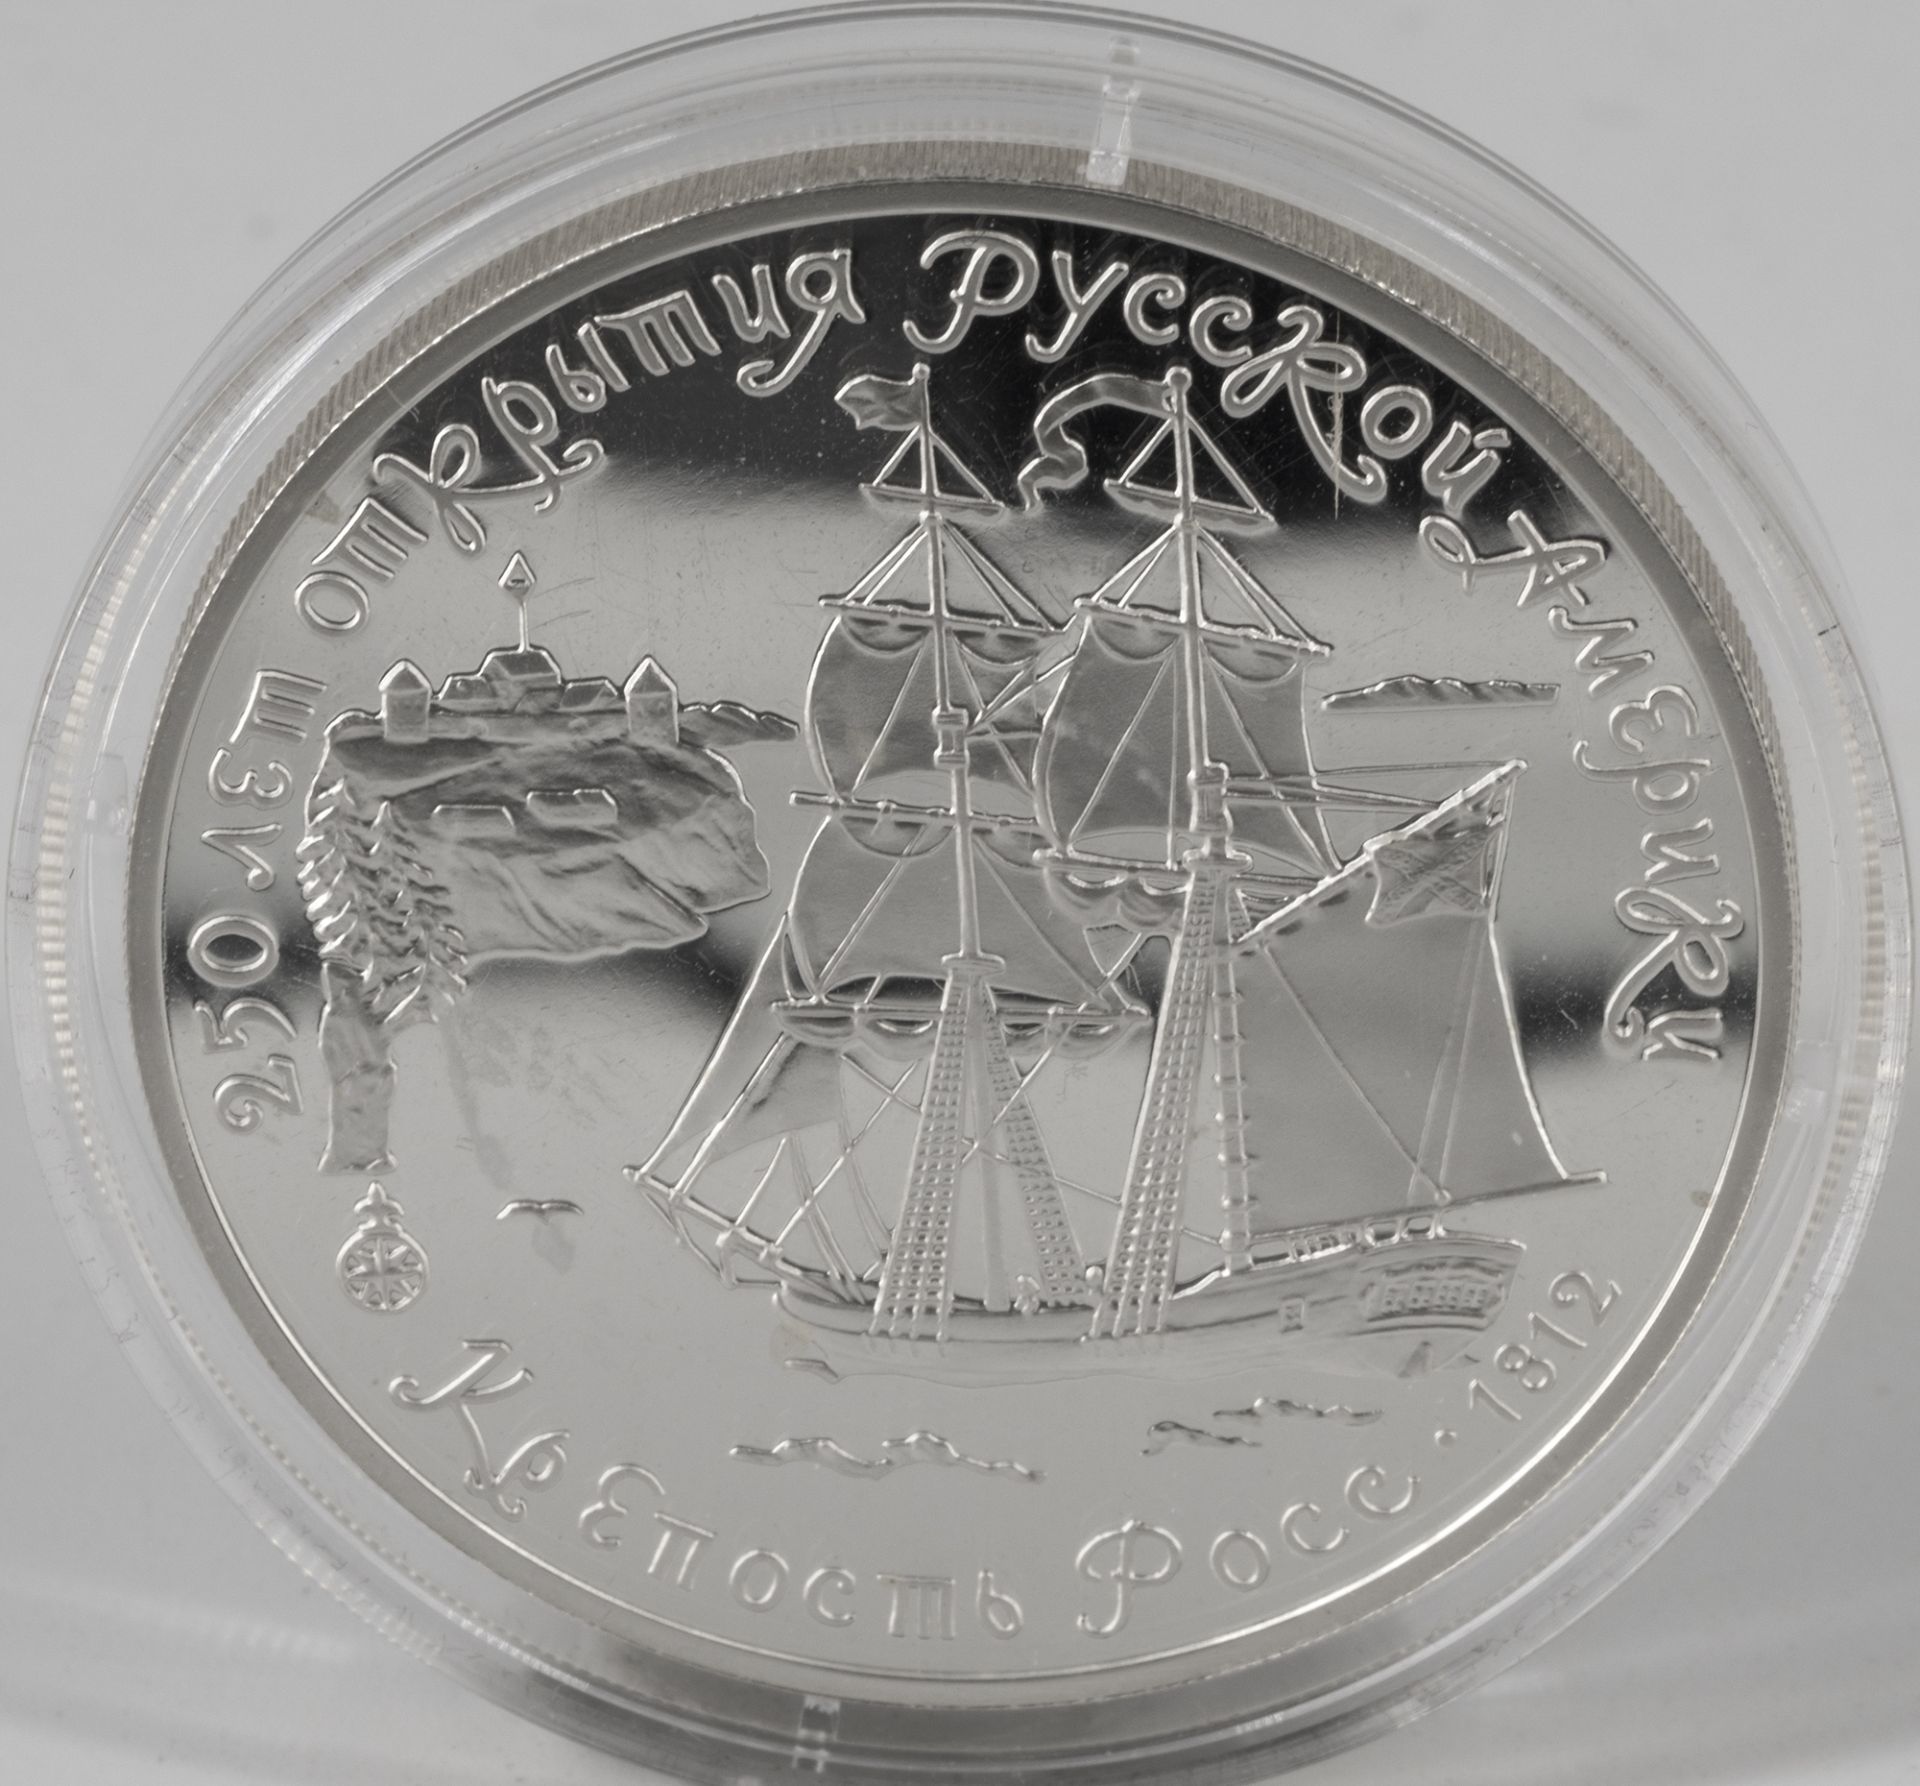 Russland 1991, 3 Rubel - Silbermünze, "Fort Ross", Silber 900, Gewicht: 31,1 g. Erhaltung: PP.